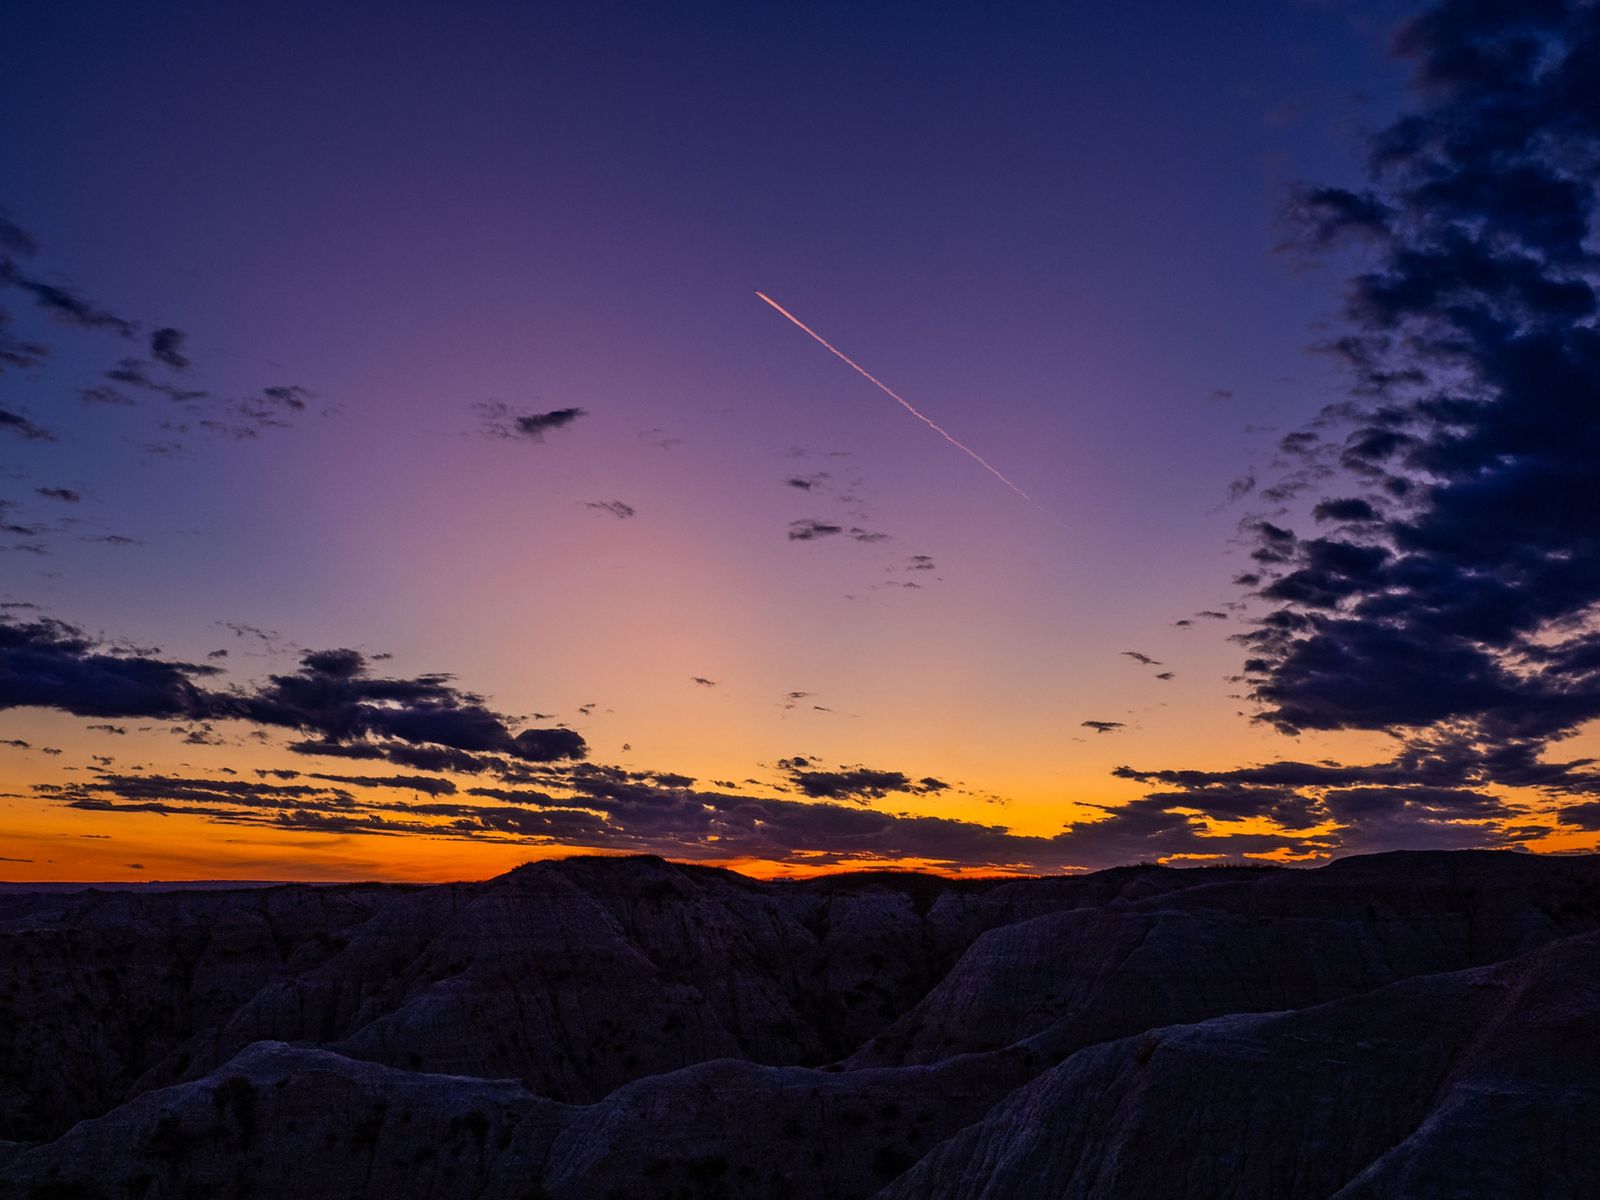 Jet trail at sunset in Badlands National Park, South Dakota.